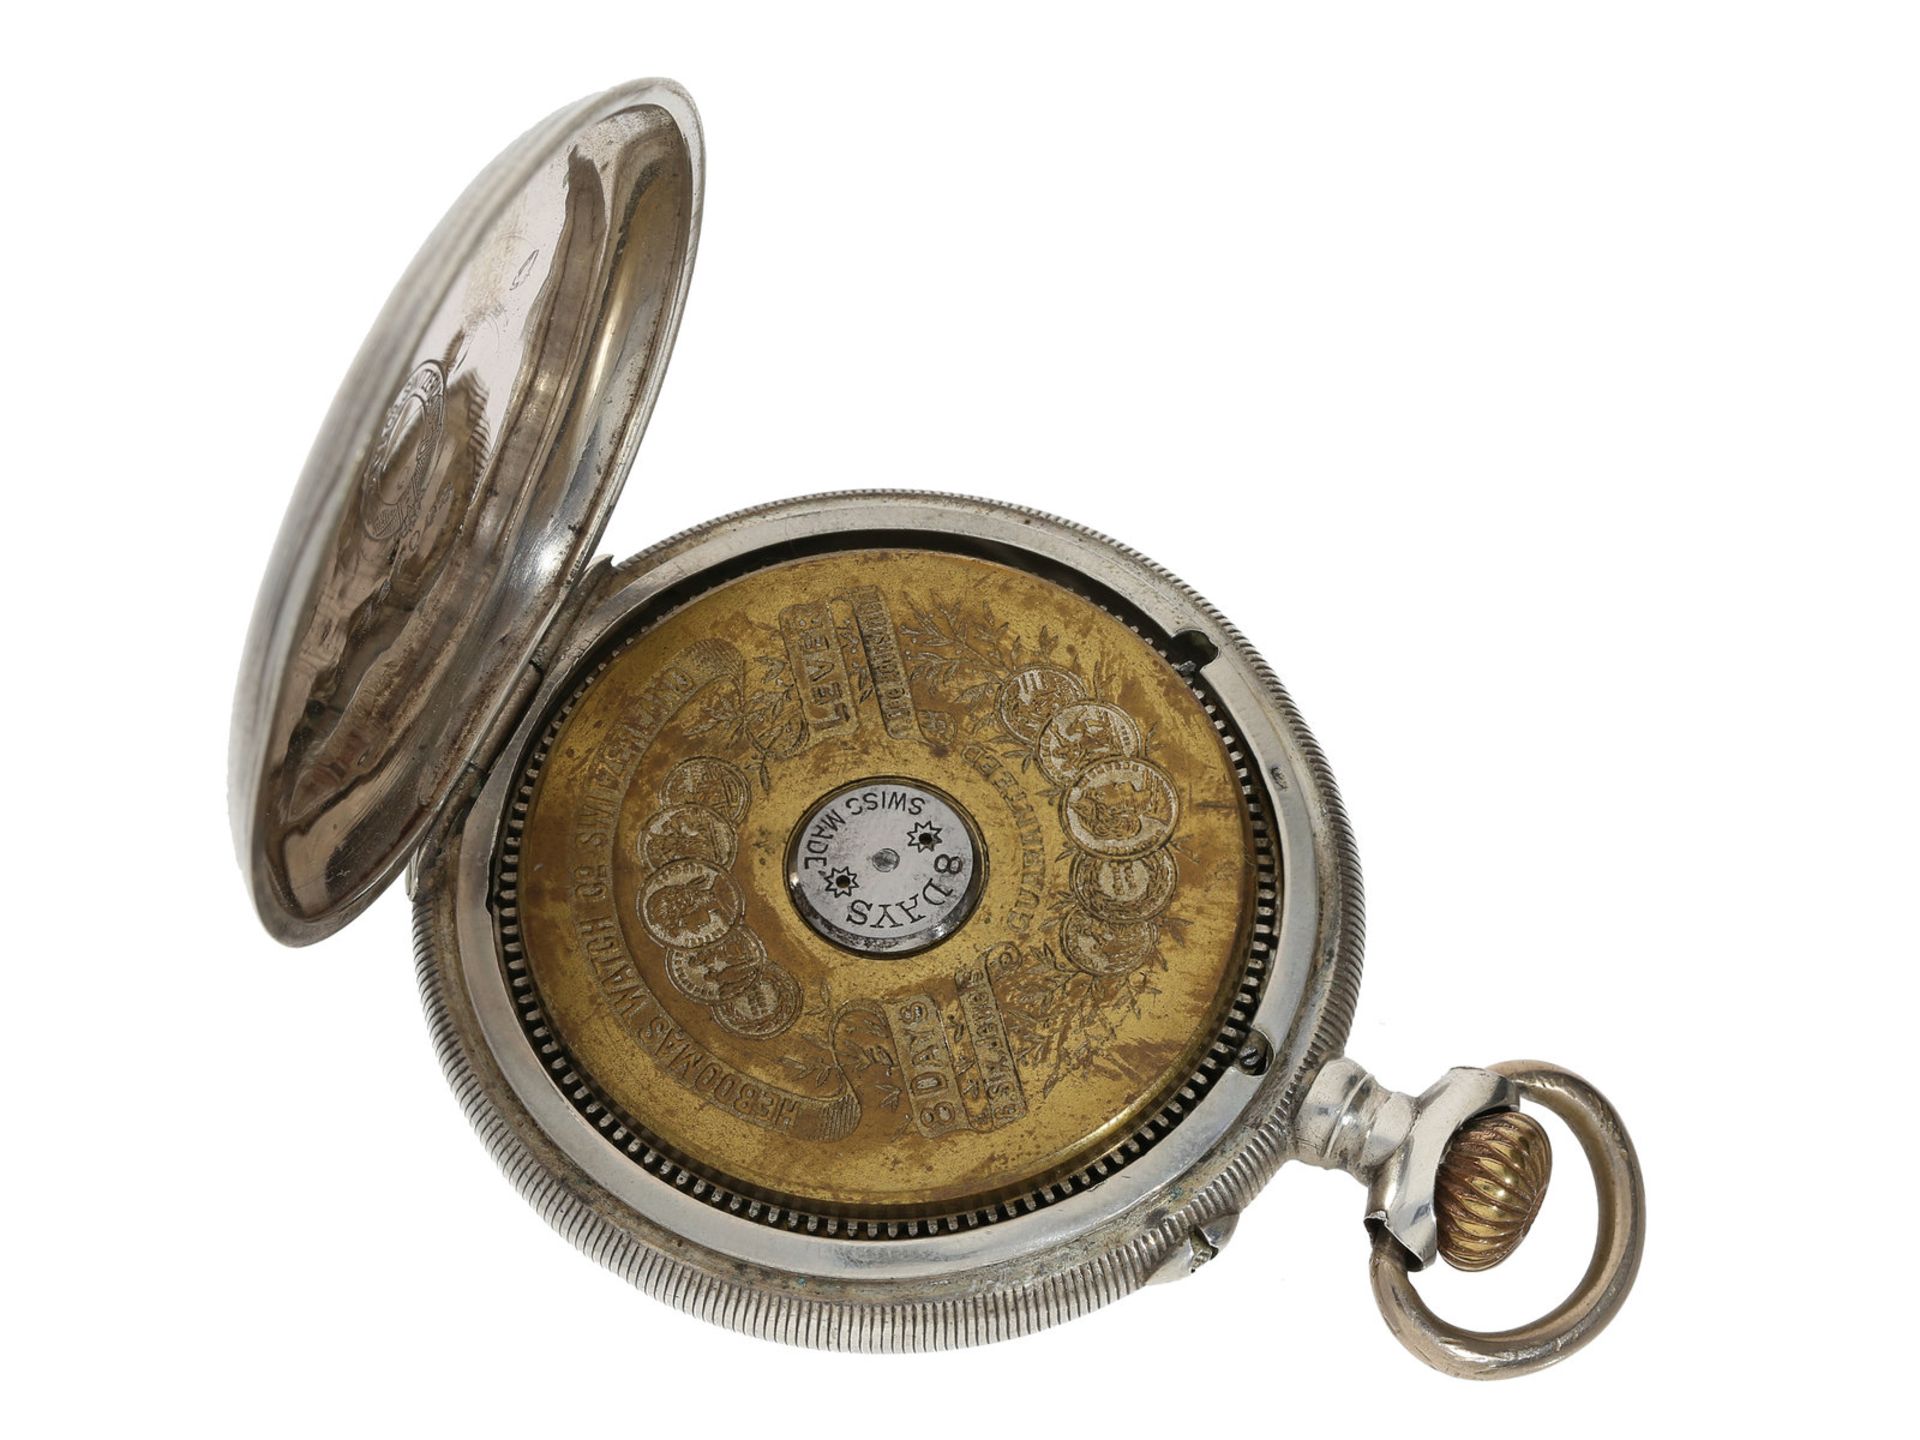 Taschenuhr: silberne Hebdomas Taschenuhr mit 8-Tage-Werk, ca. 1920Ca. Ø49mm, ca. 83g, Silbergehäuse, - Bild 2 aus 2